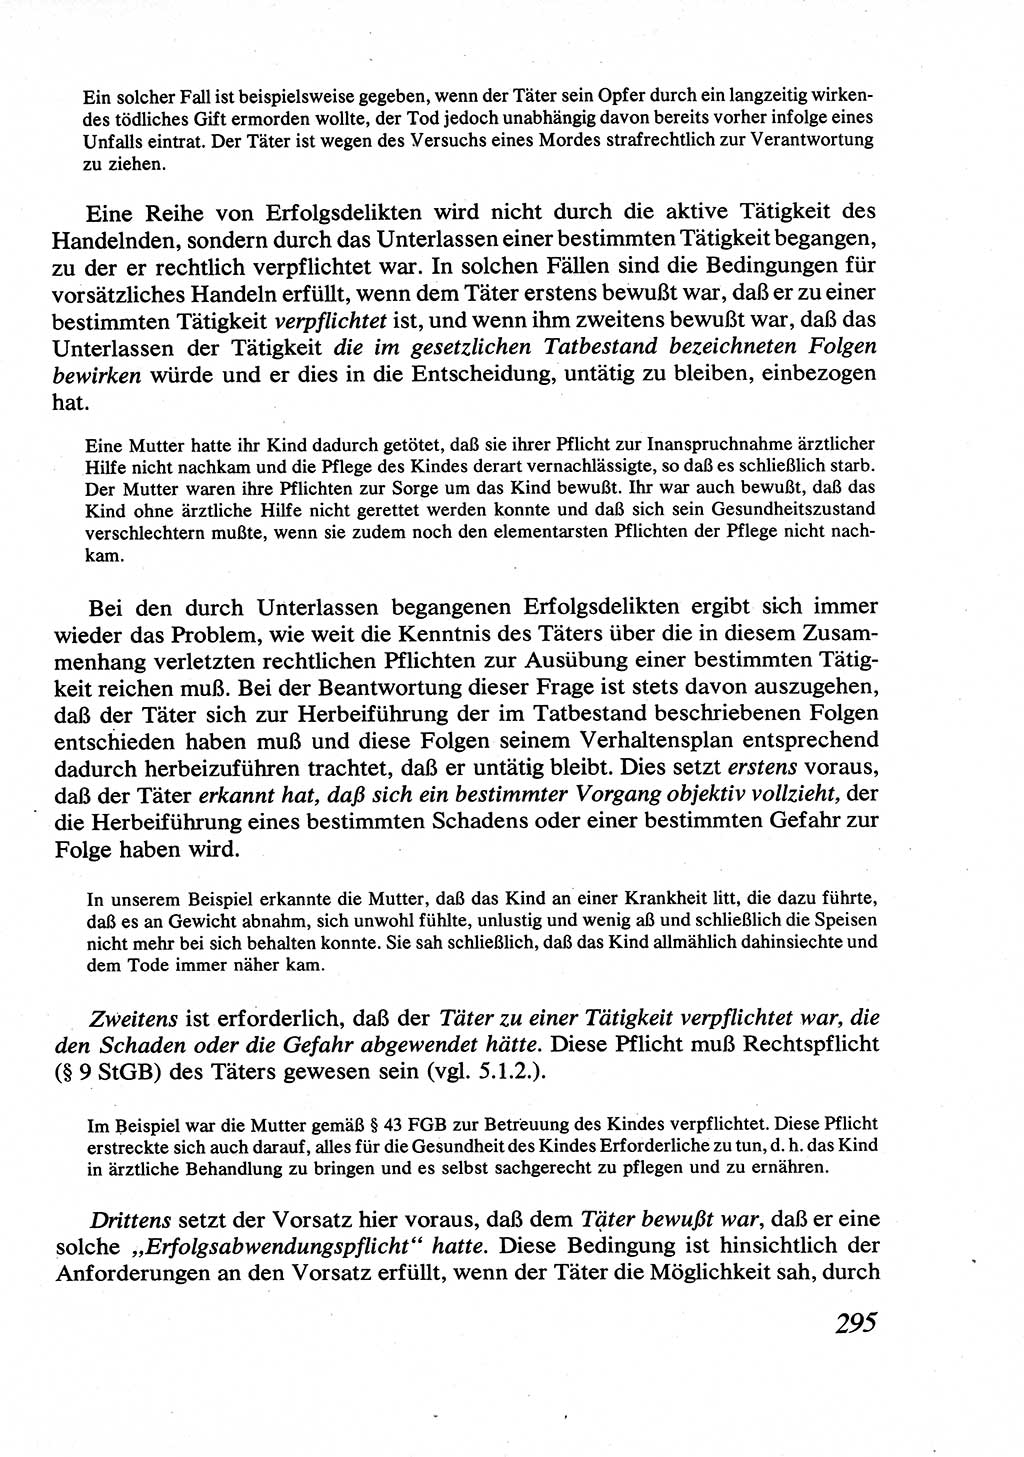 Strafrecht [Deutsche Demokratische Republik (DDR)], Allgemeiner Teil, Lehrbuch 1976, Seite 295 (Strafr. DDR AT Lb. 1976, S. 295)